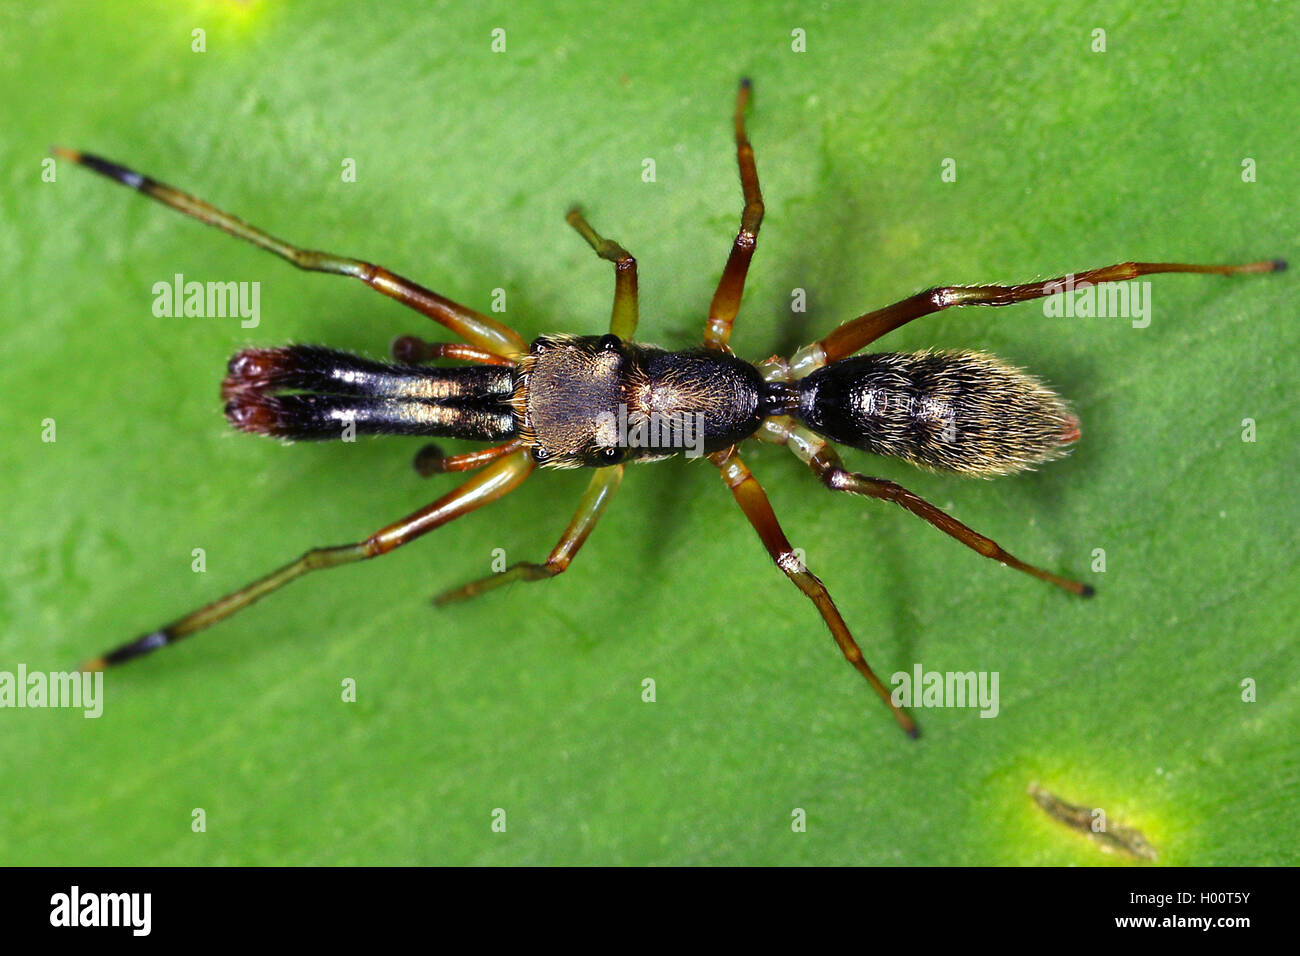 Les araignées aranéomorphes (saut), se trouve sur une feuille, le Costa Rica Banque D'Images